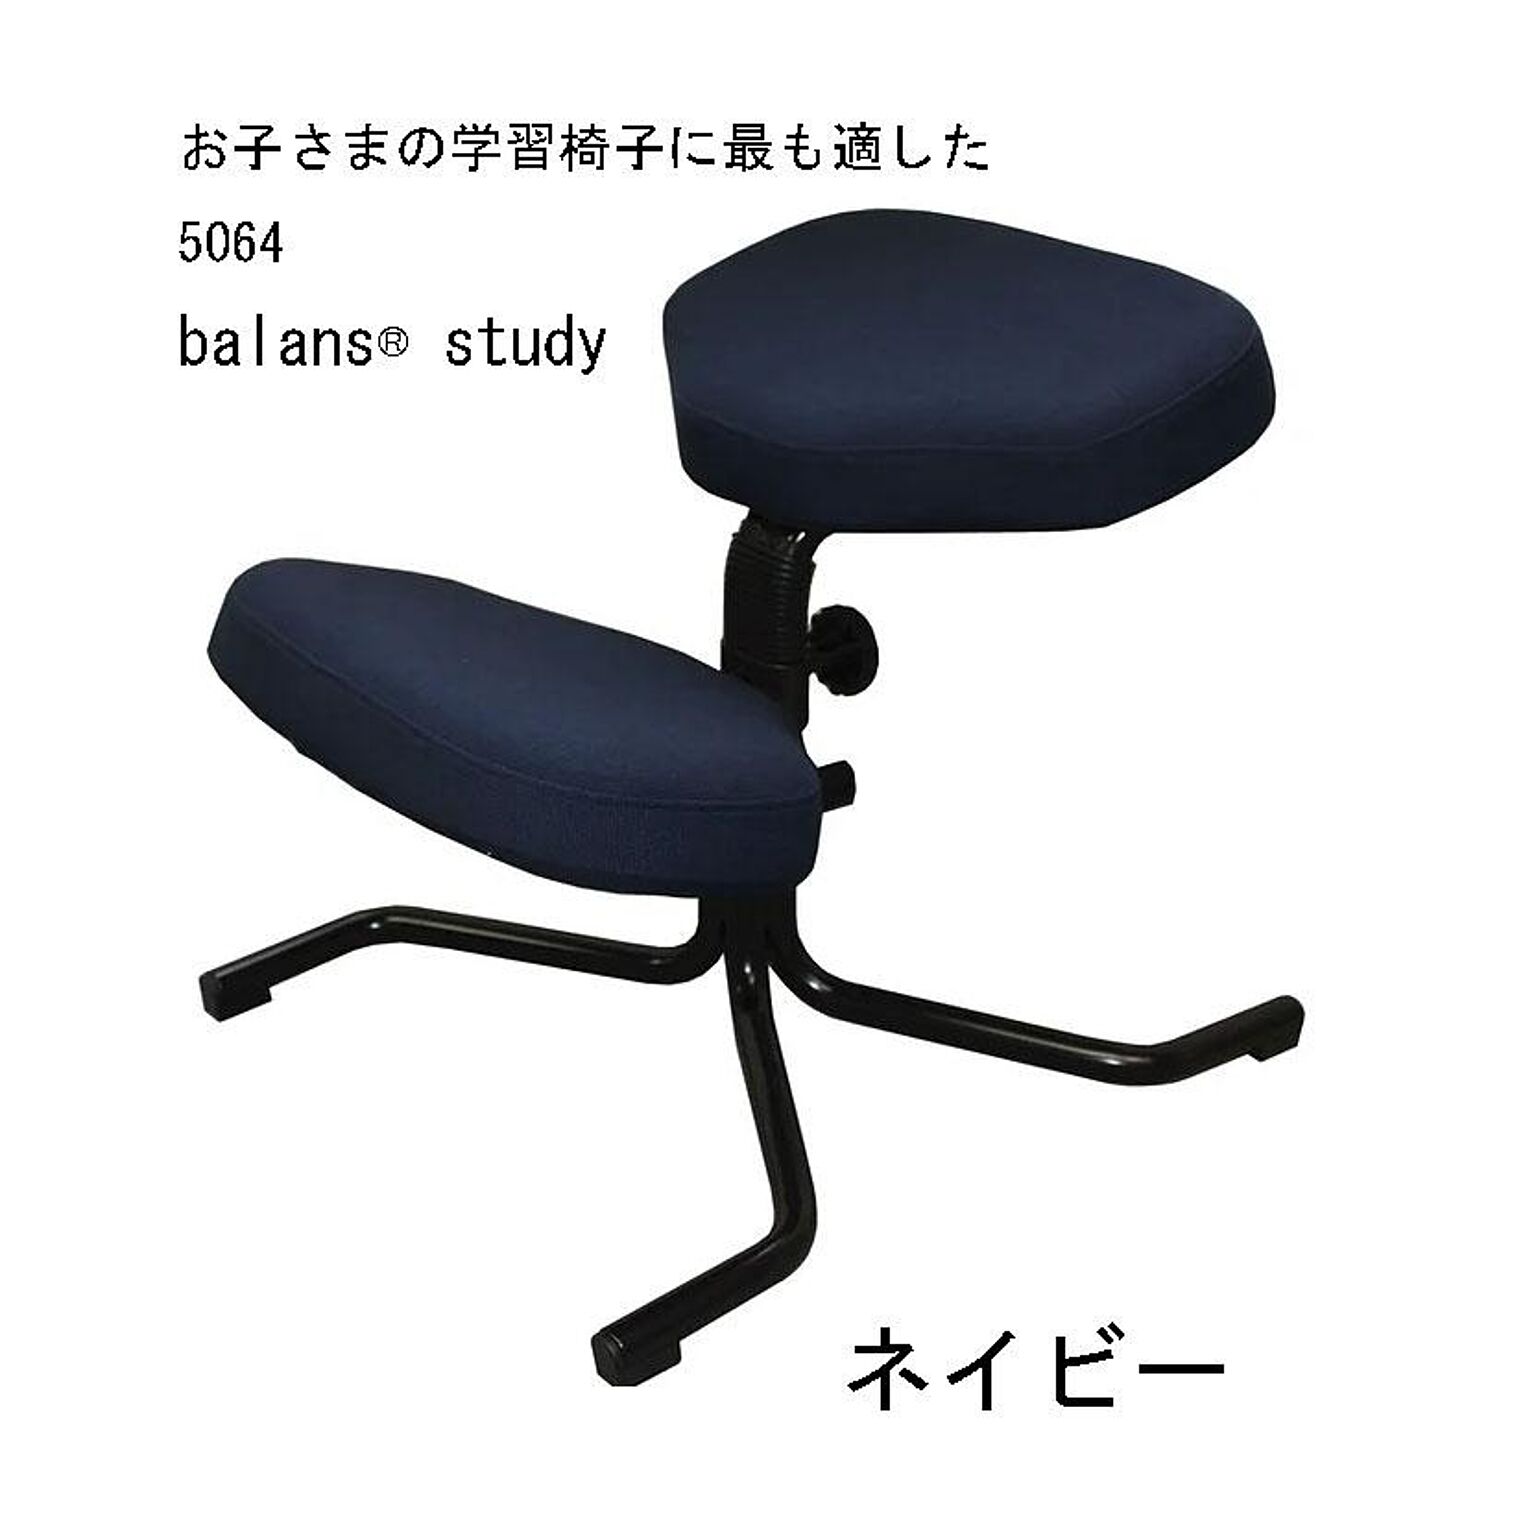 背筋すっきり 姿勢よく勉強ができる 5064 バランススタディ balans-study